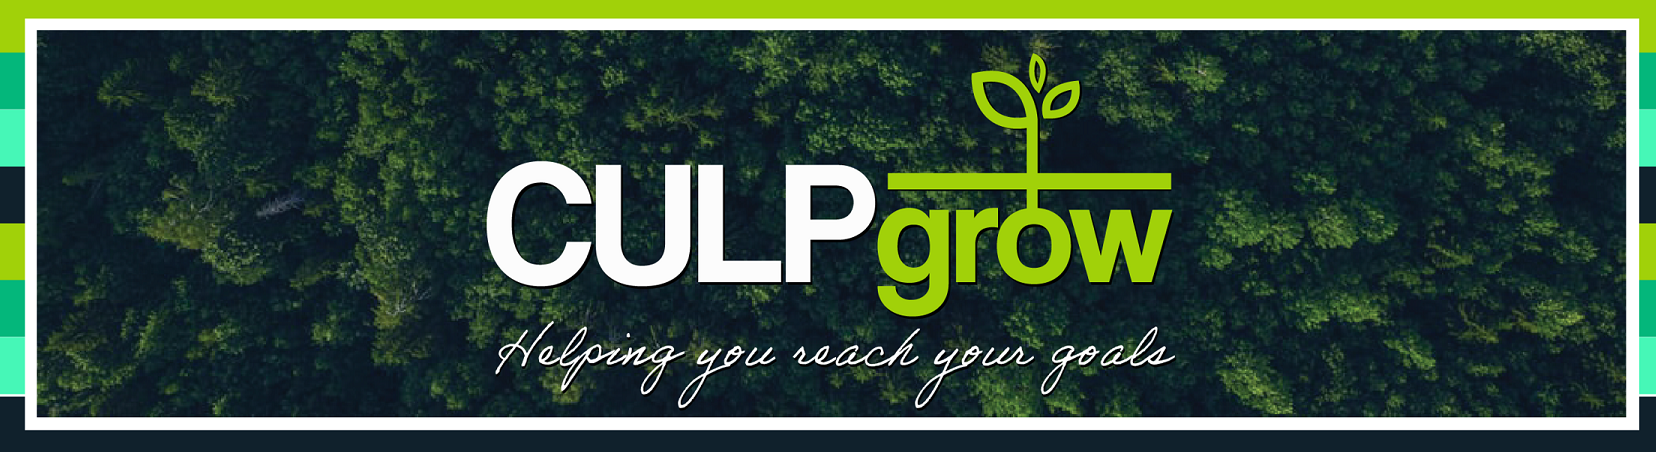 CULPgrow logo